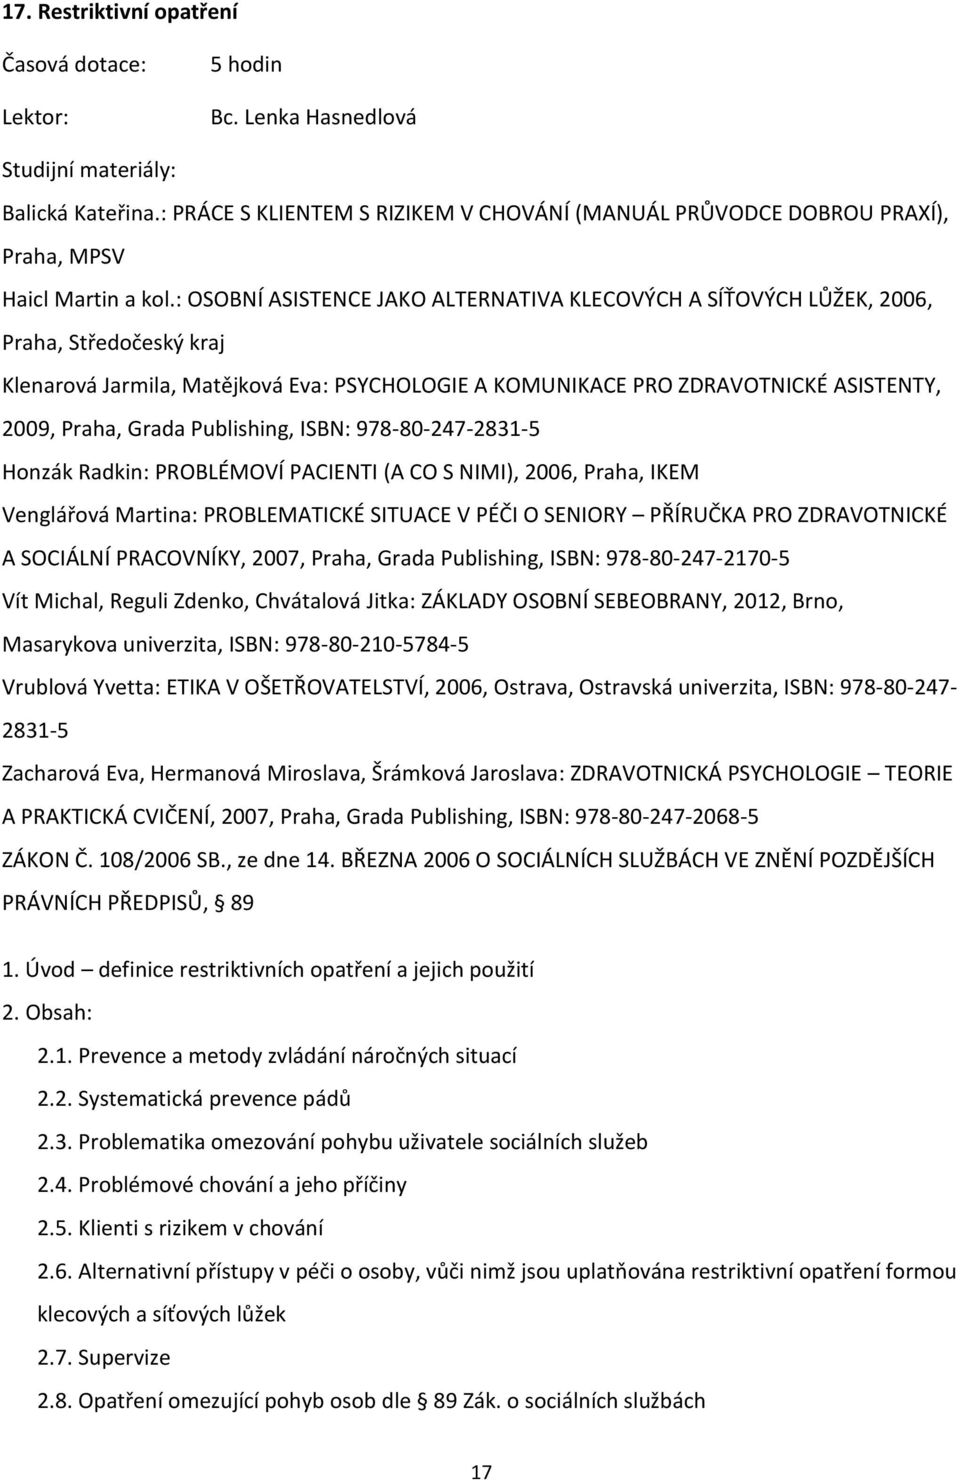 Publishing, ISBN: 978-80-247-2831-5 Honzák Radkin: PROBLÉMOVÍ PACIENTI (A CO S NIMI), 2006, Praha, IKEM Venglářová Martina: PROBLEMATICKÉ SITUACE V PÉČI O SENIORY PŘÍRUČKA PRO ZDRAVOTNICKÉ A SOCIÁLNÍ